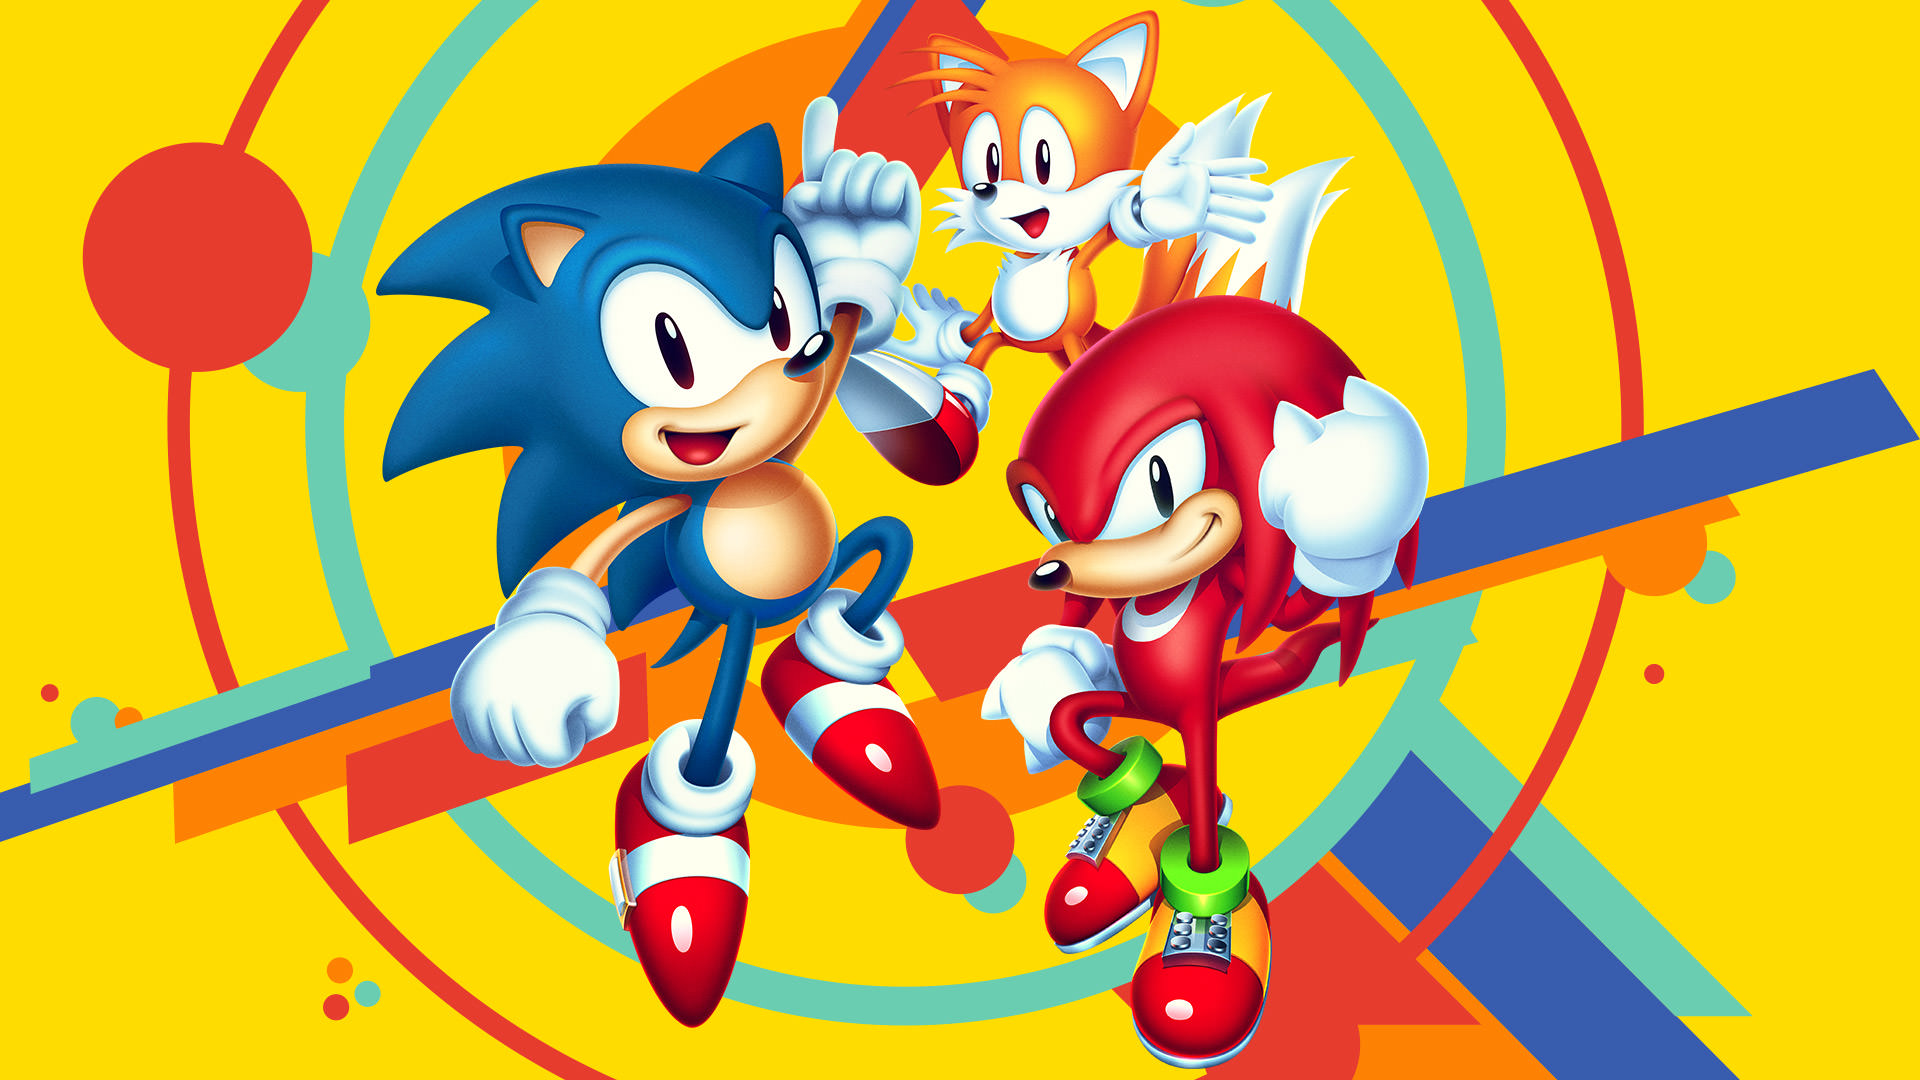 بازی های رایگان بعدی فروشگاه اپیک گیمز: از Sonic Mania تا یک اثر ریسینگ